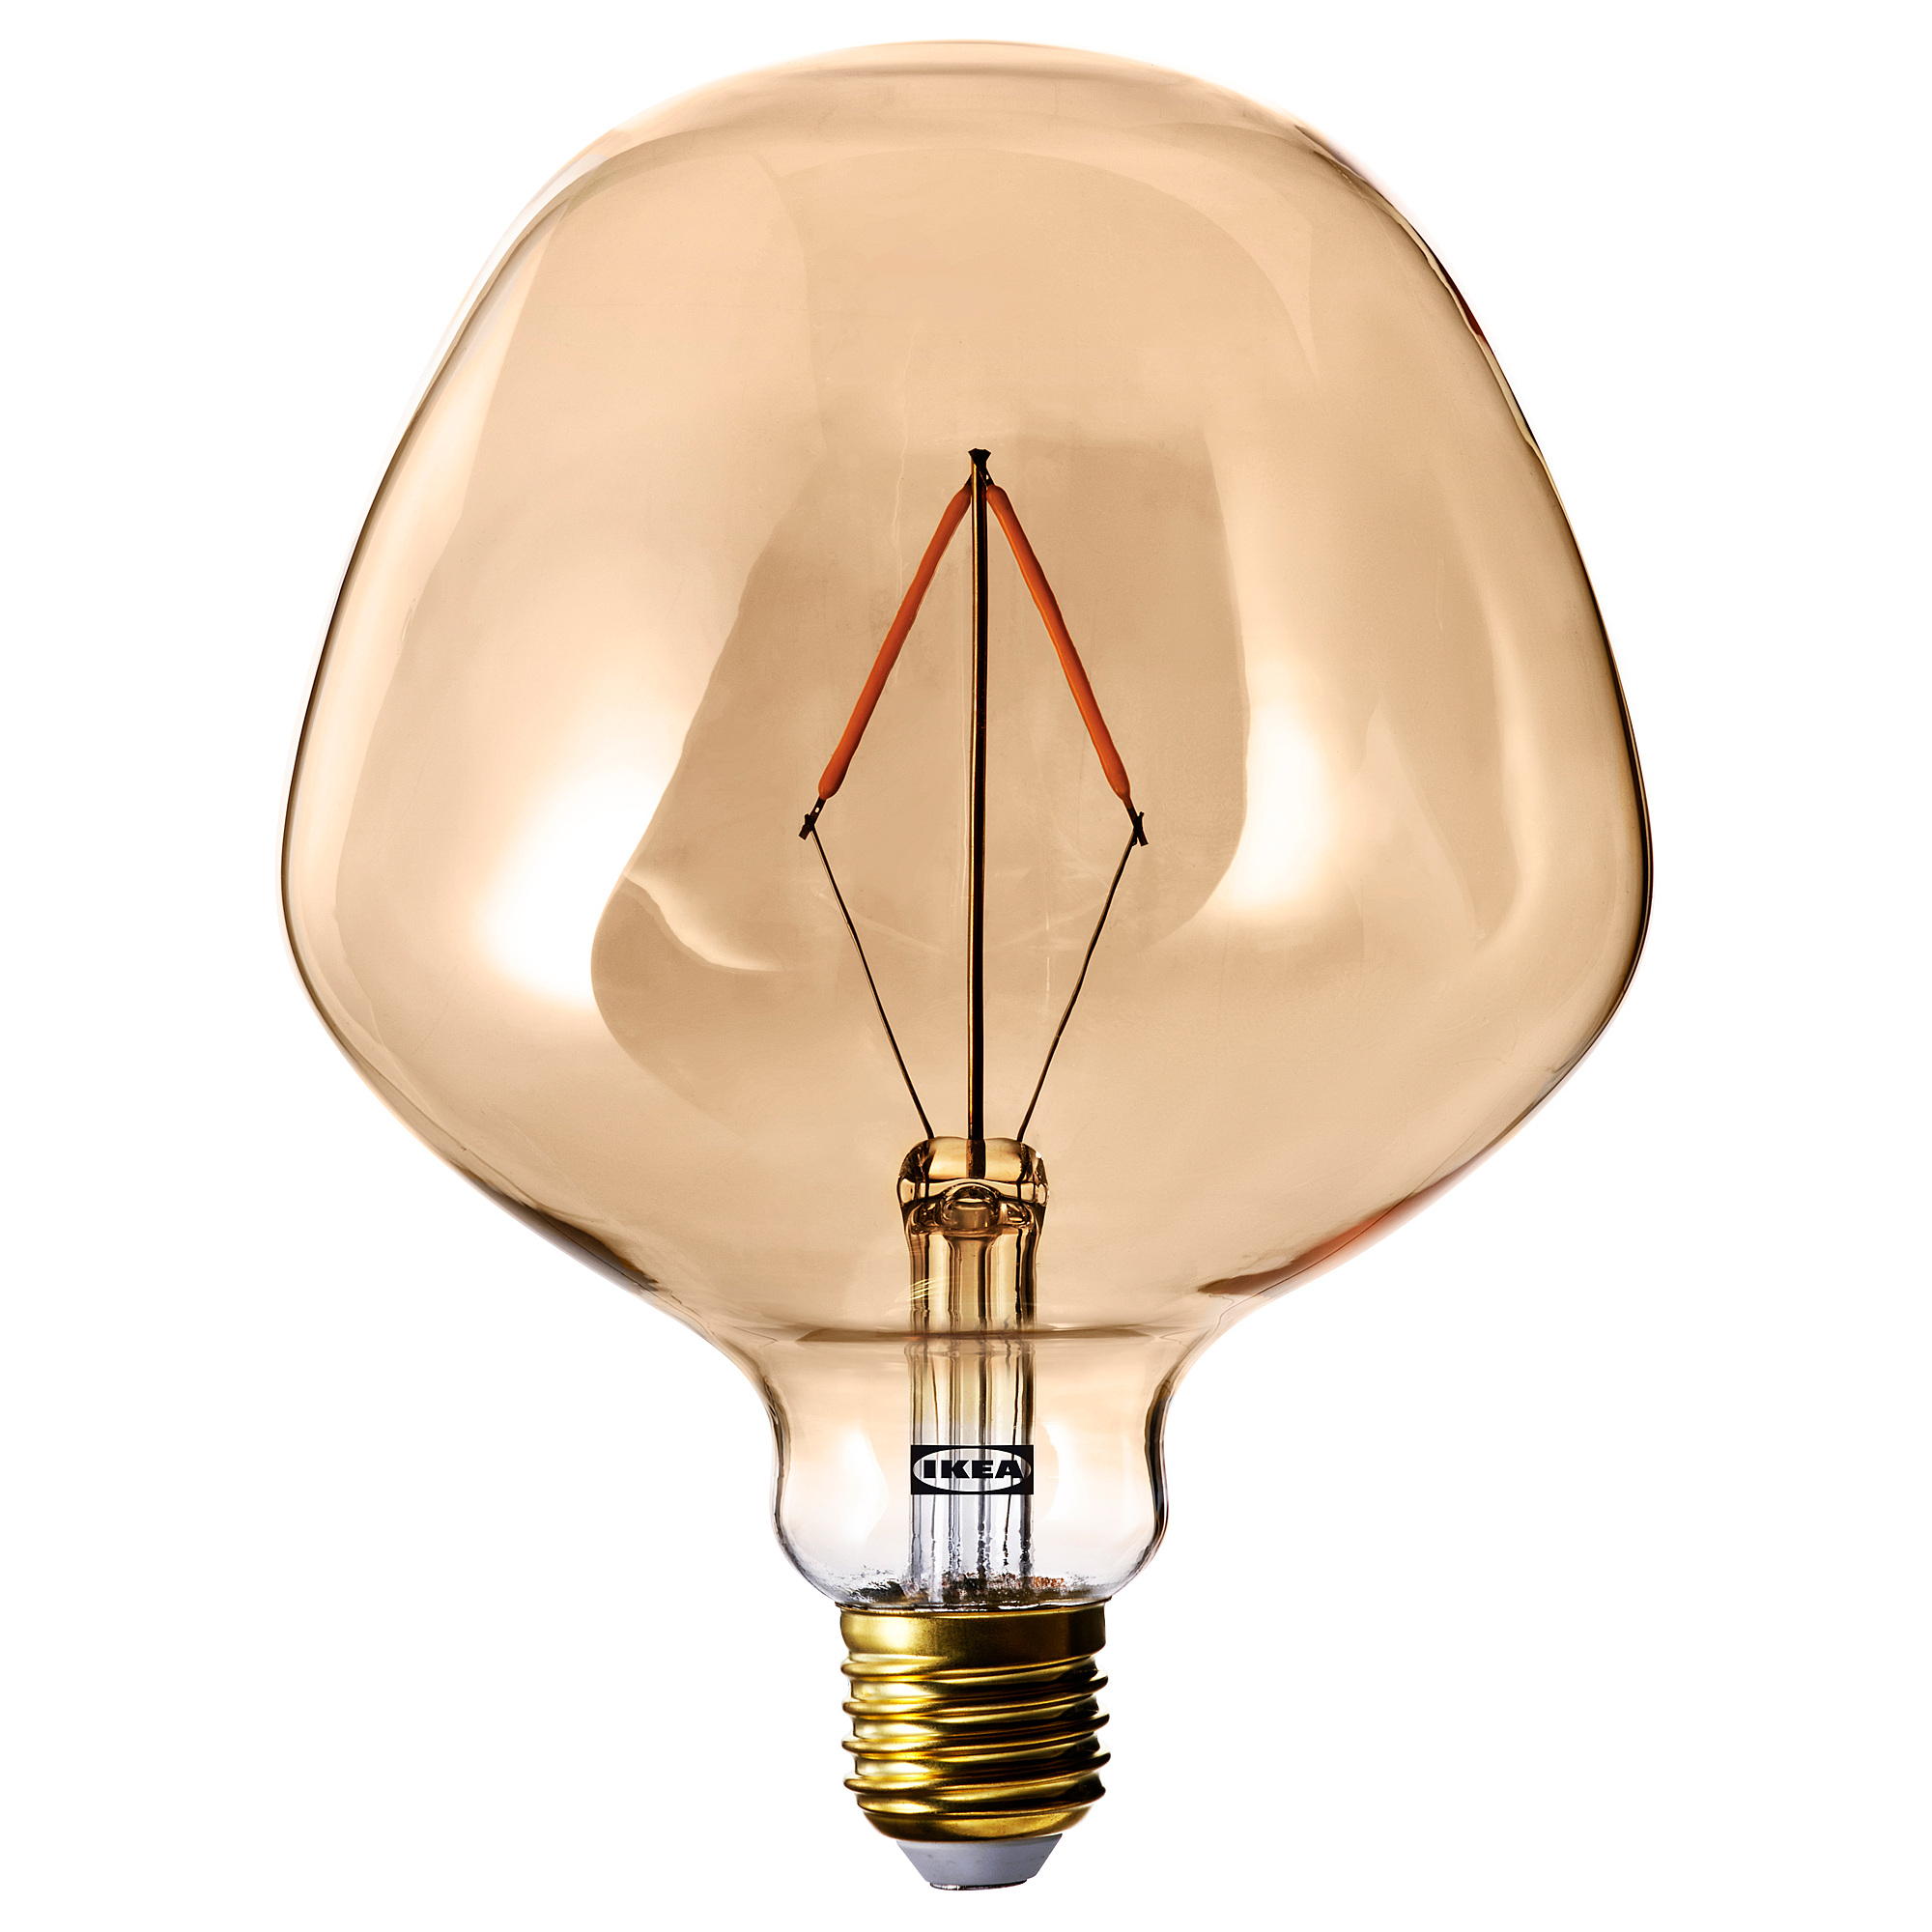 MOLNART LED bulb E27 120 lumen